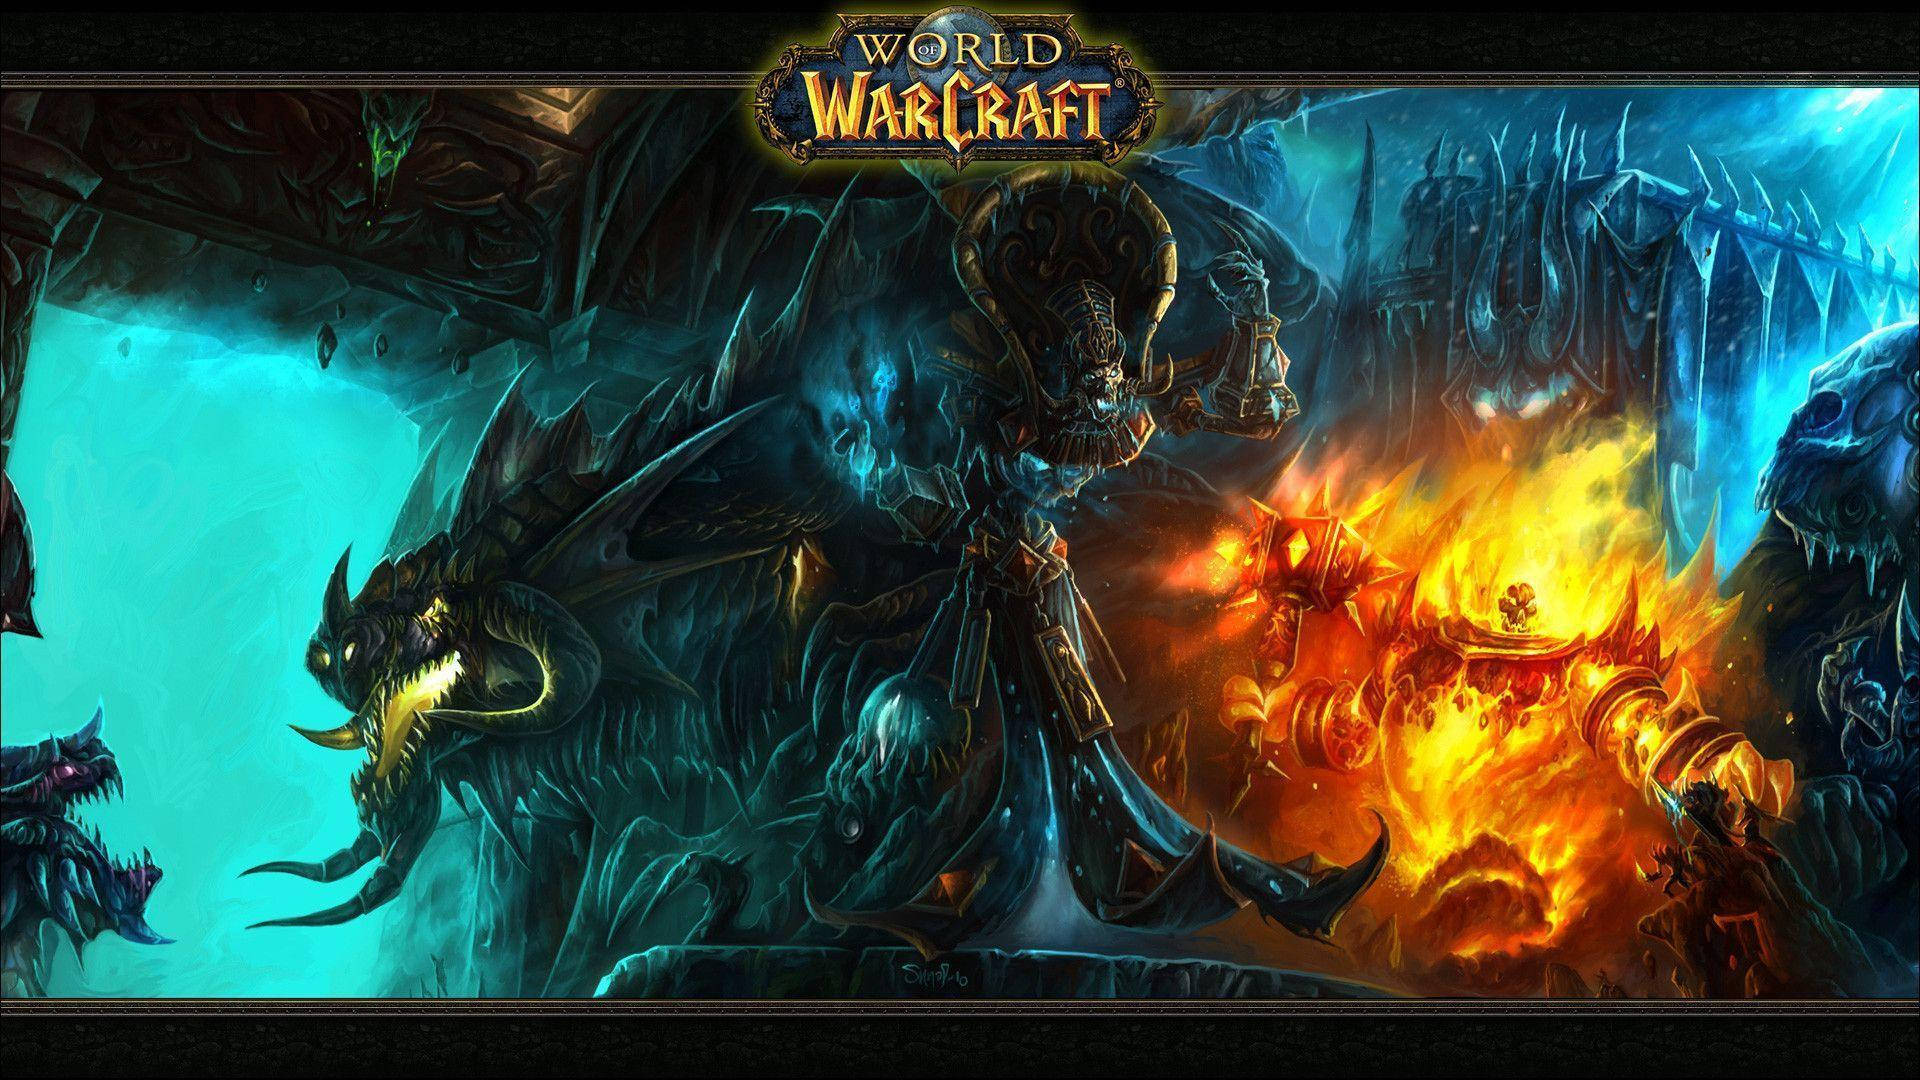 World Of Warcraft Kel'thuzad And Deathwing